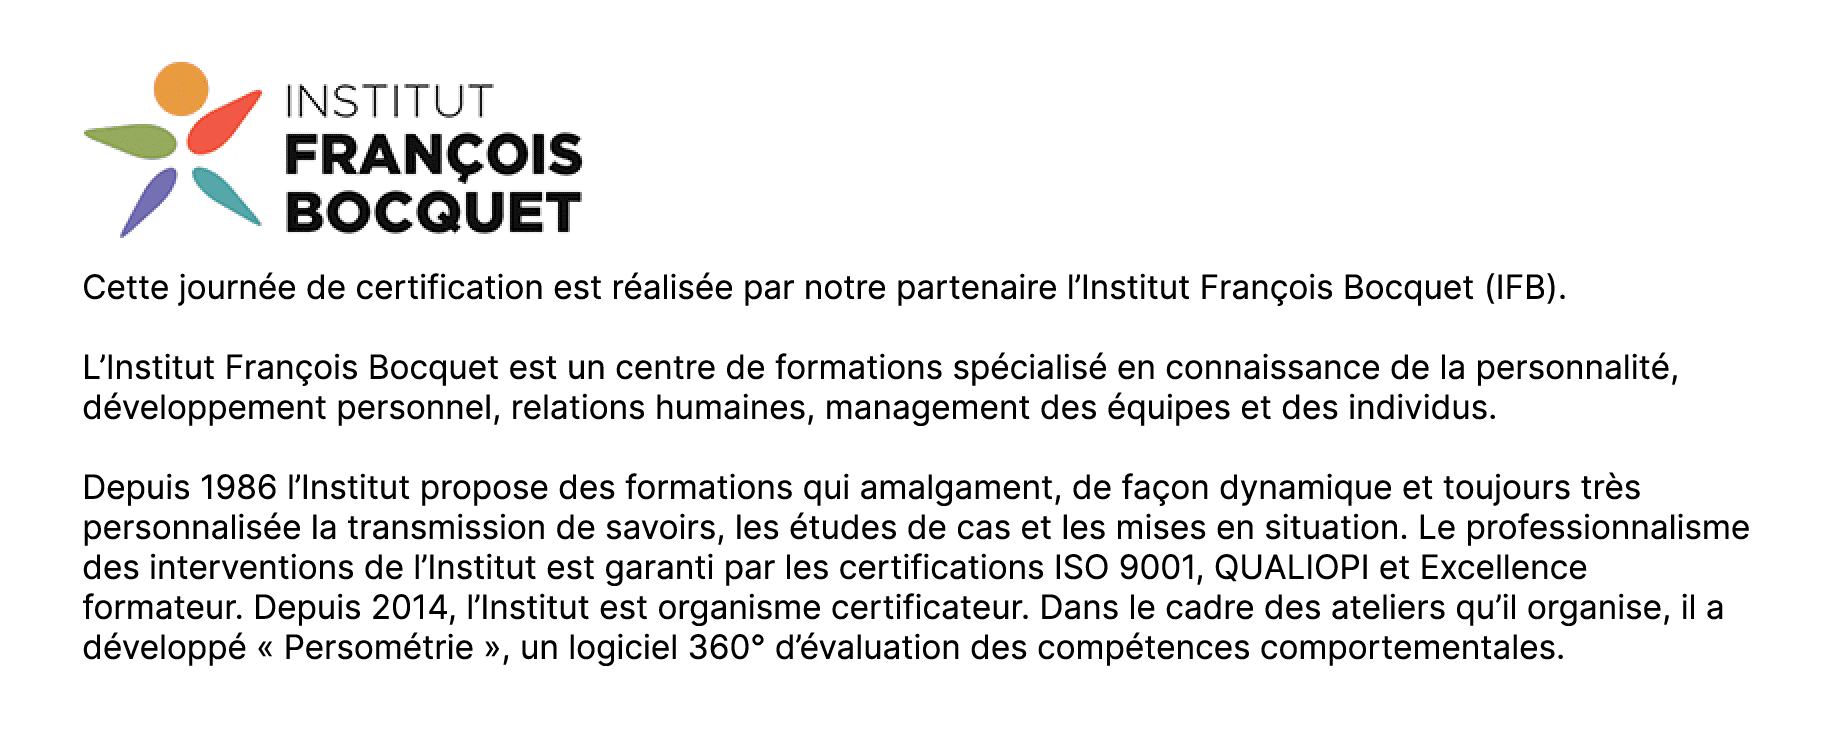 Institut François Bocquet